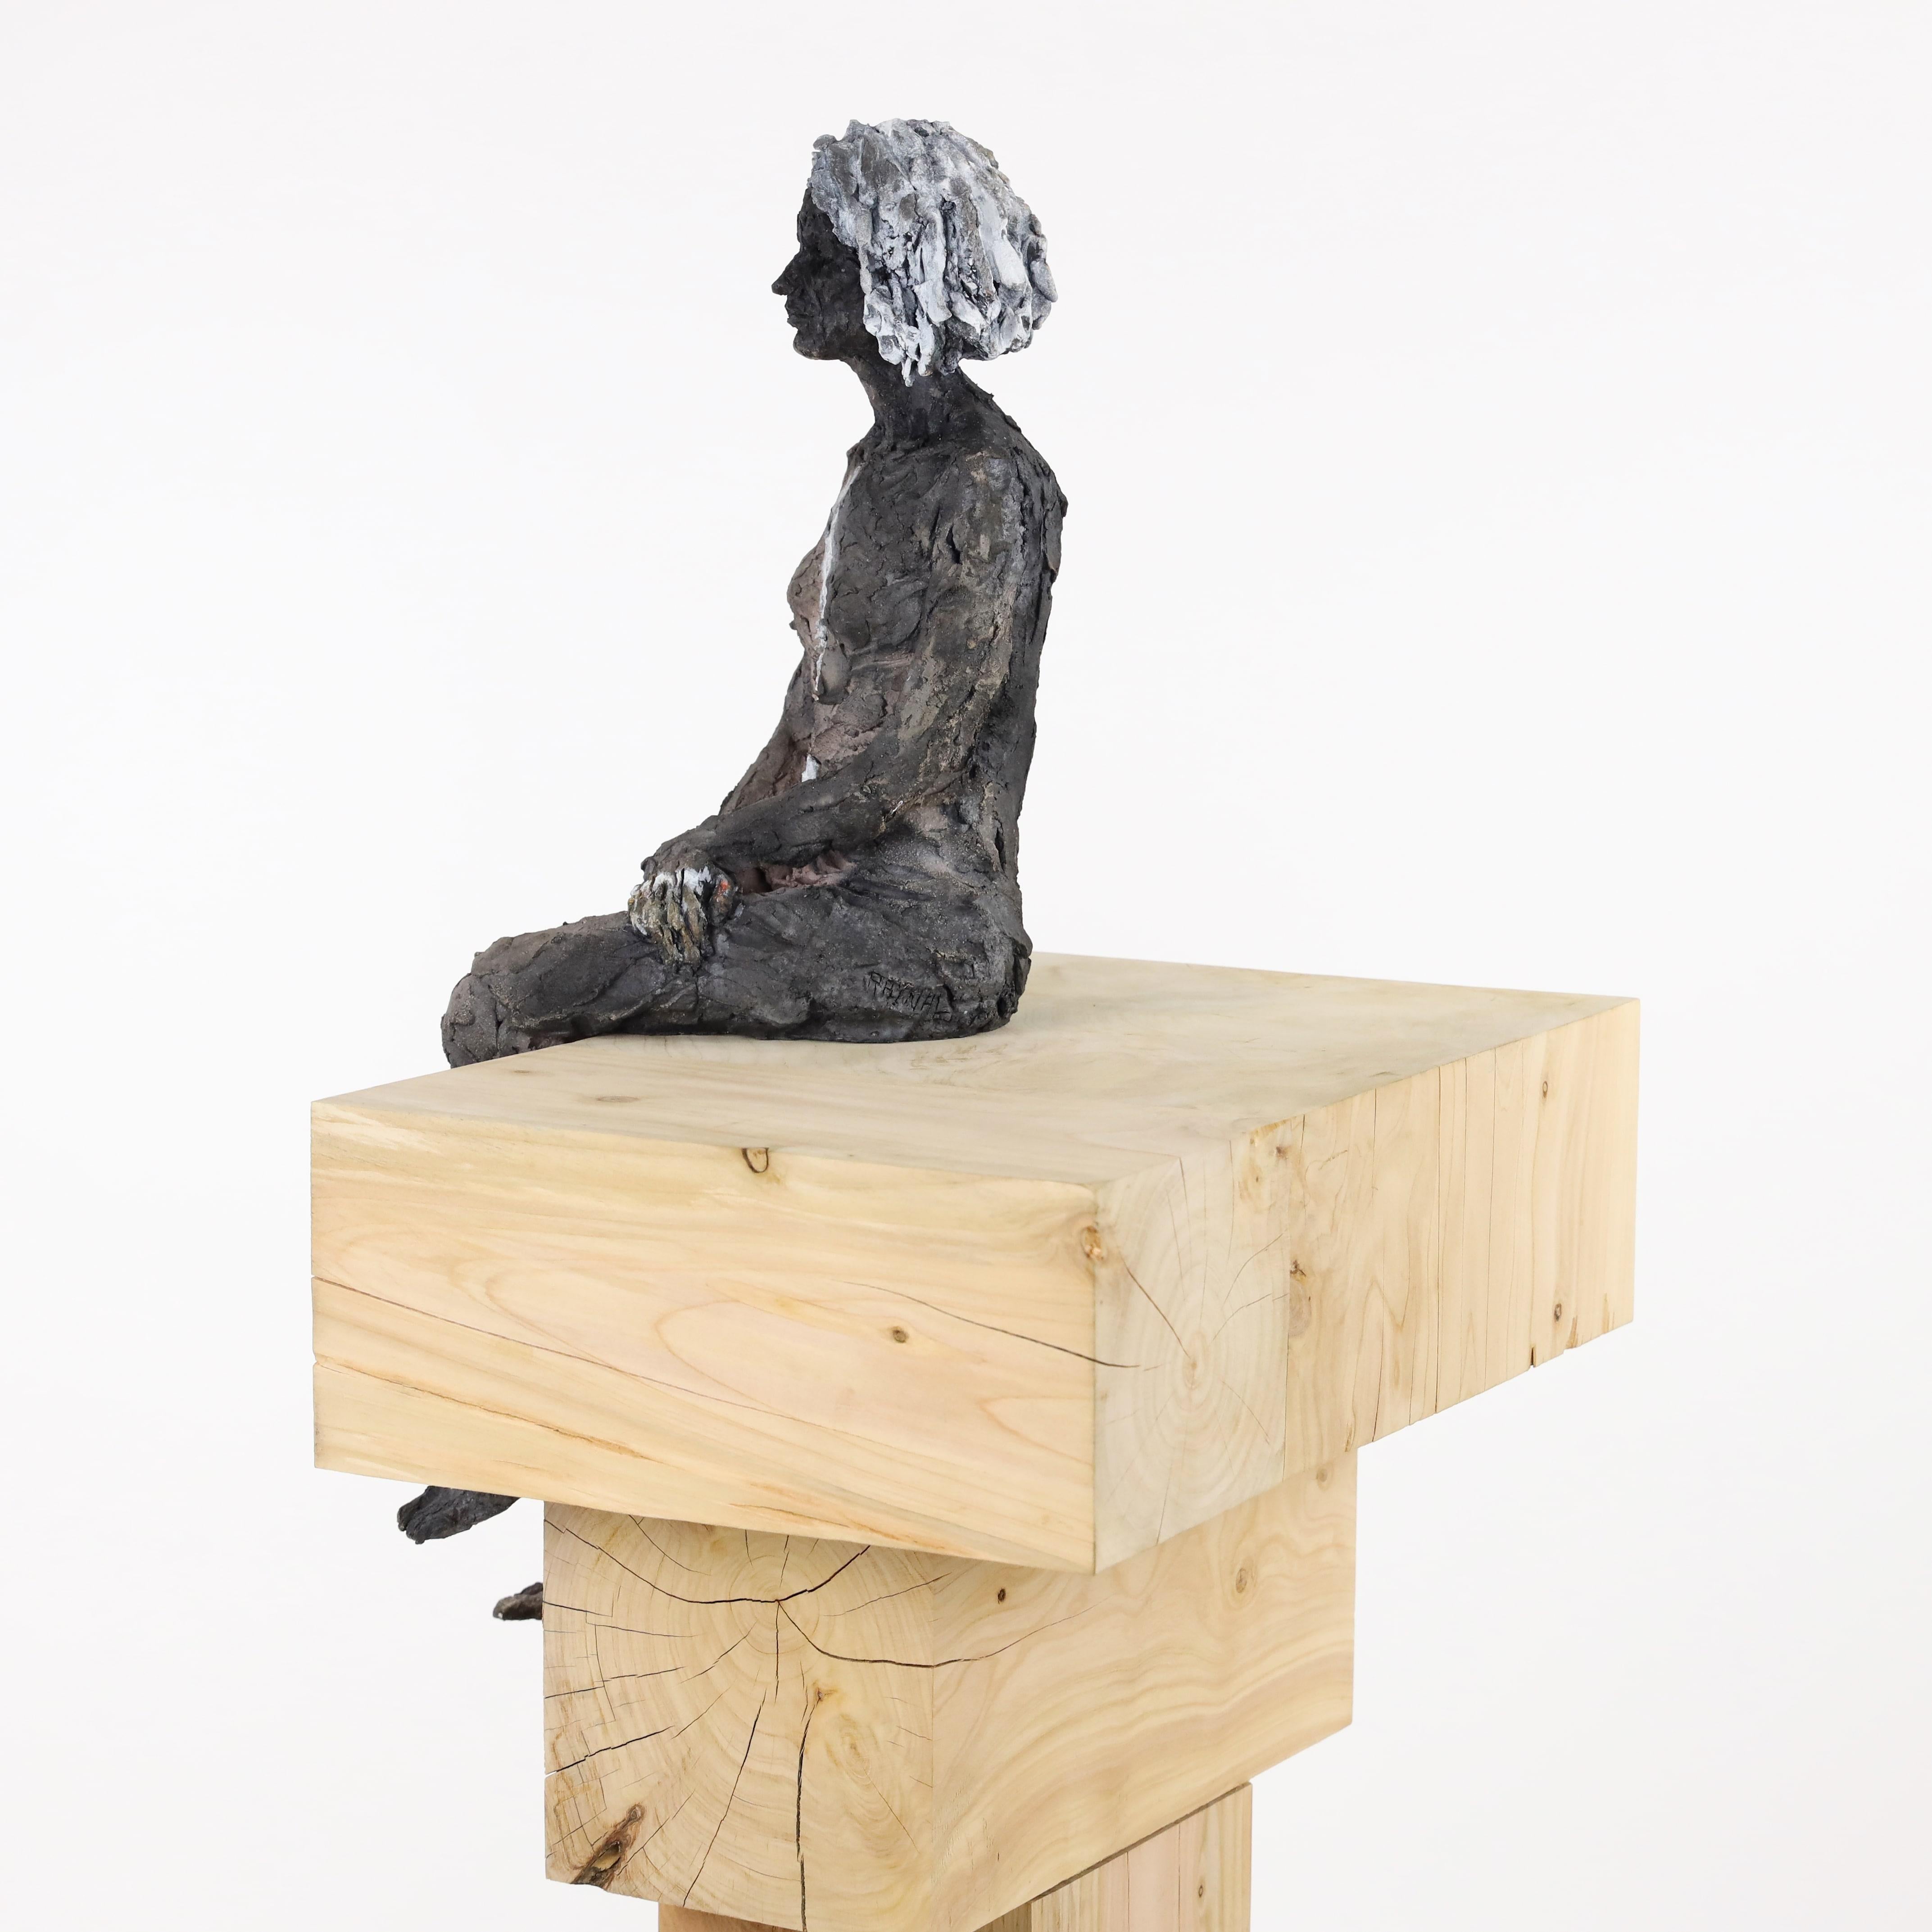 Inès - Female Portrait, Ceramic Sculpture - Brown Figurative Sculpture by Cécile Raynal